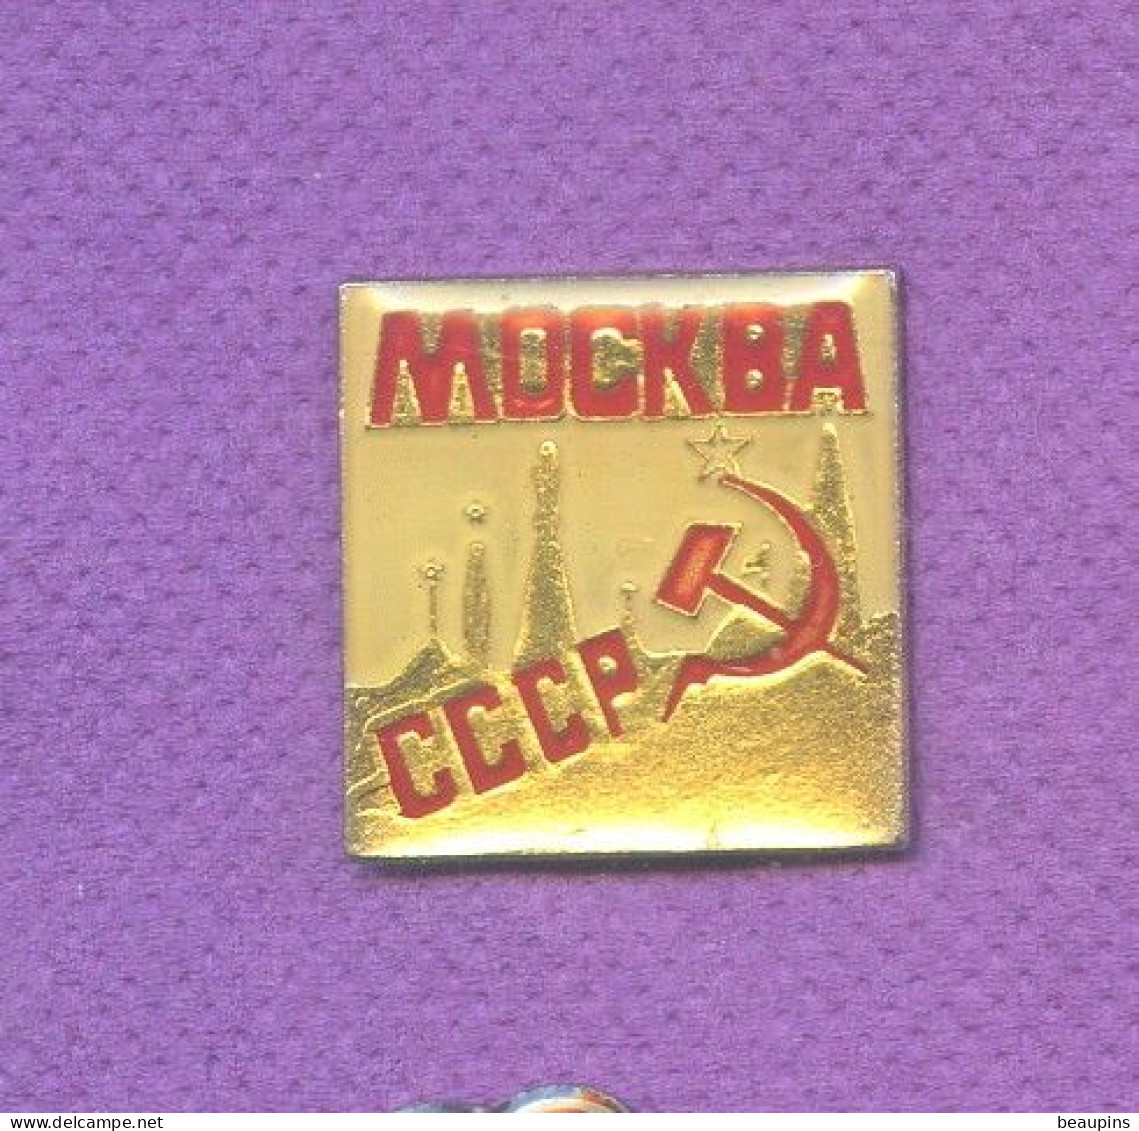 Rare Pins Russie Urss Cccp Faucille Marteau Politique N329 - Administraties